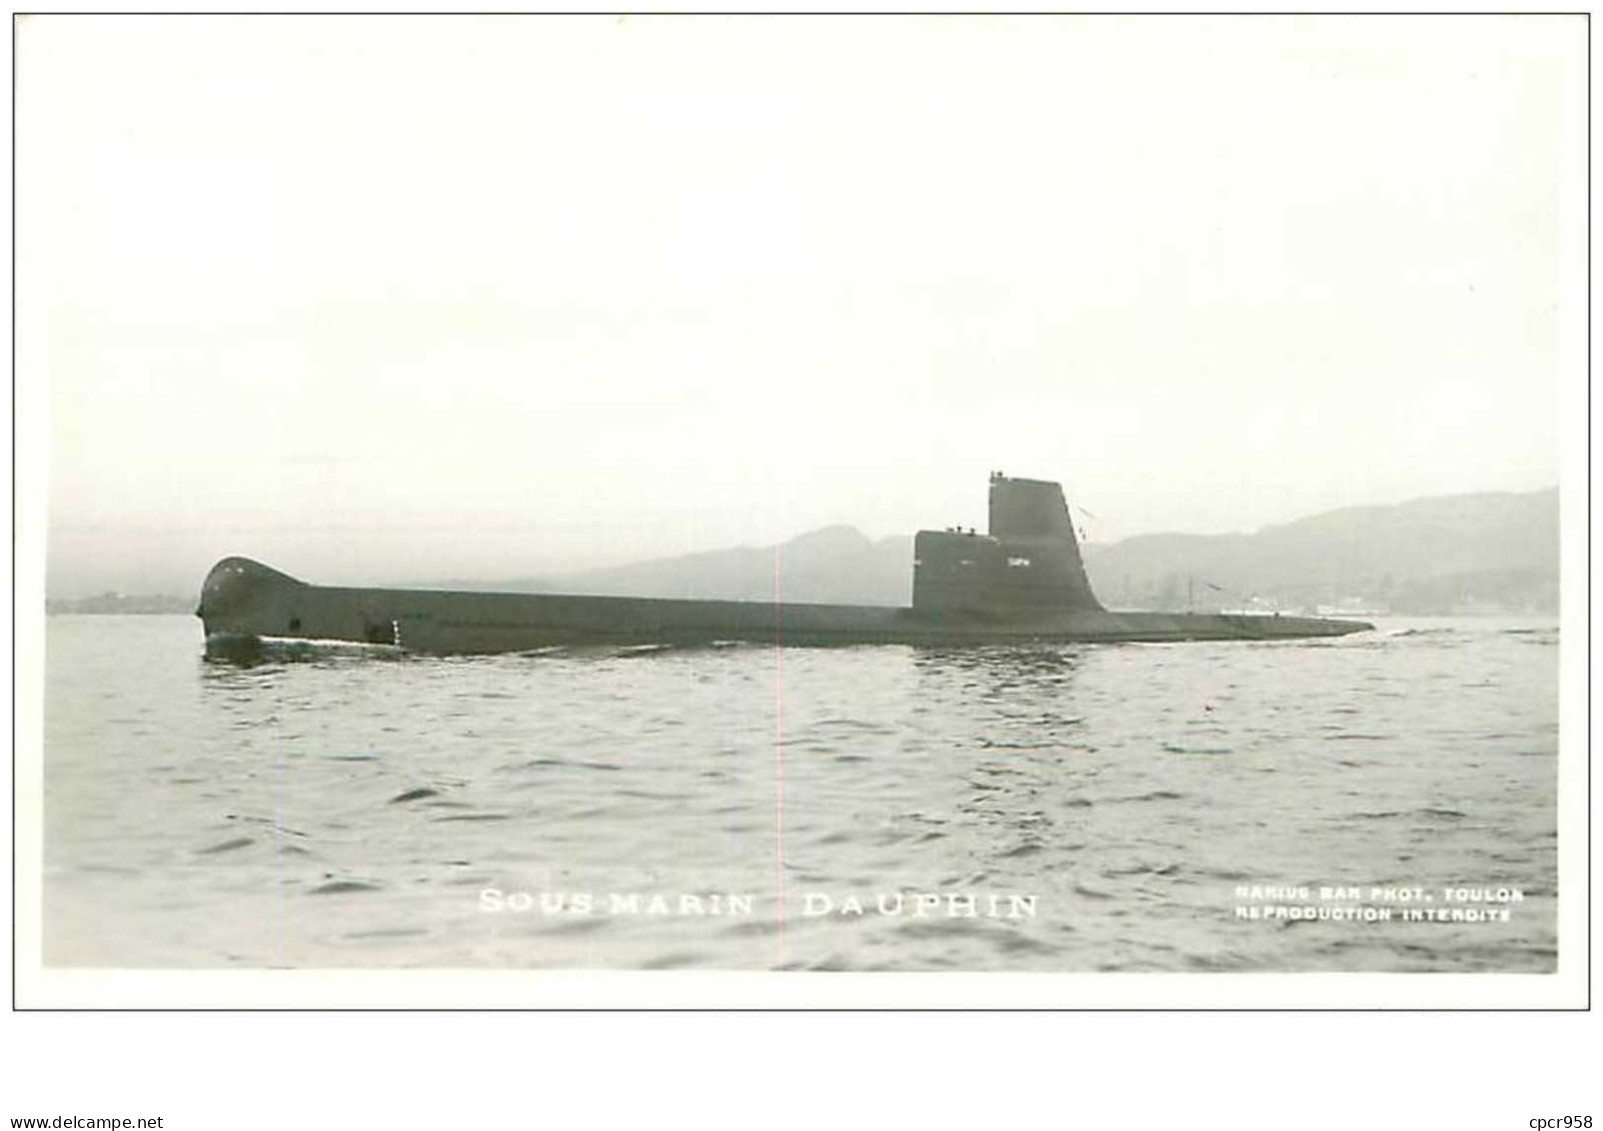 SOUS-MARINS.n°24841.PHOTO DE MARIUS BAR.DAUPHIN - Submarines